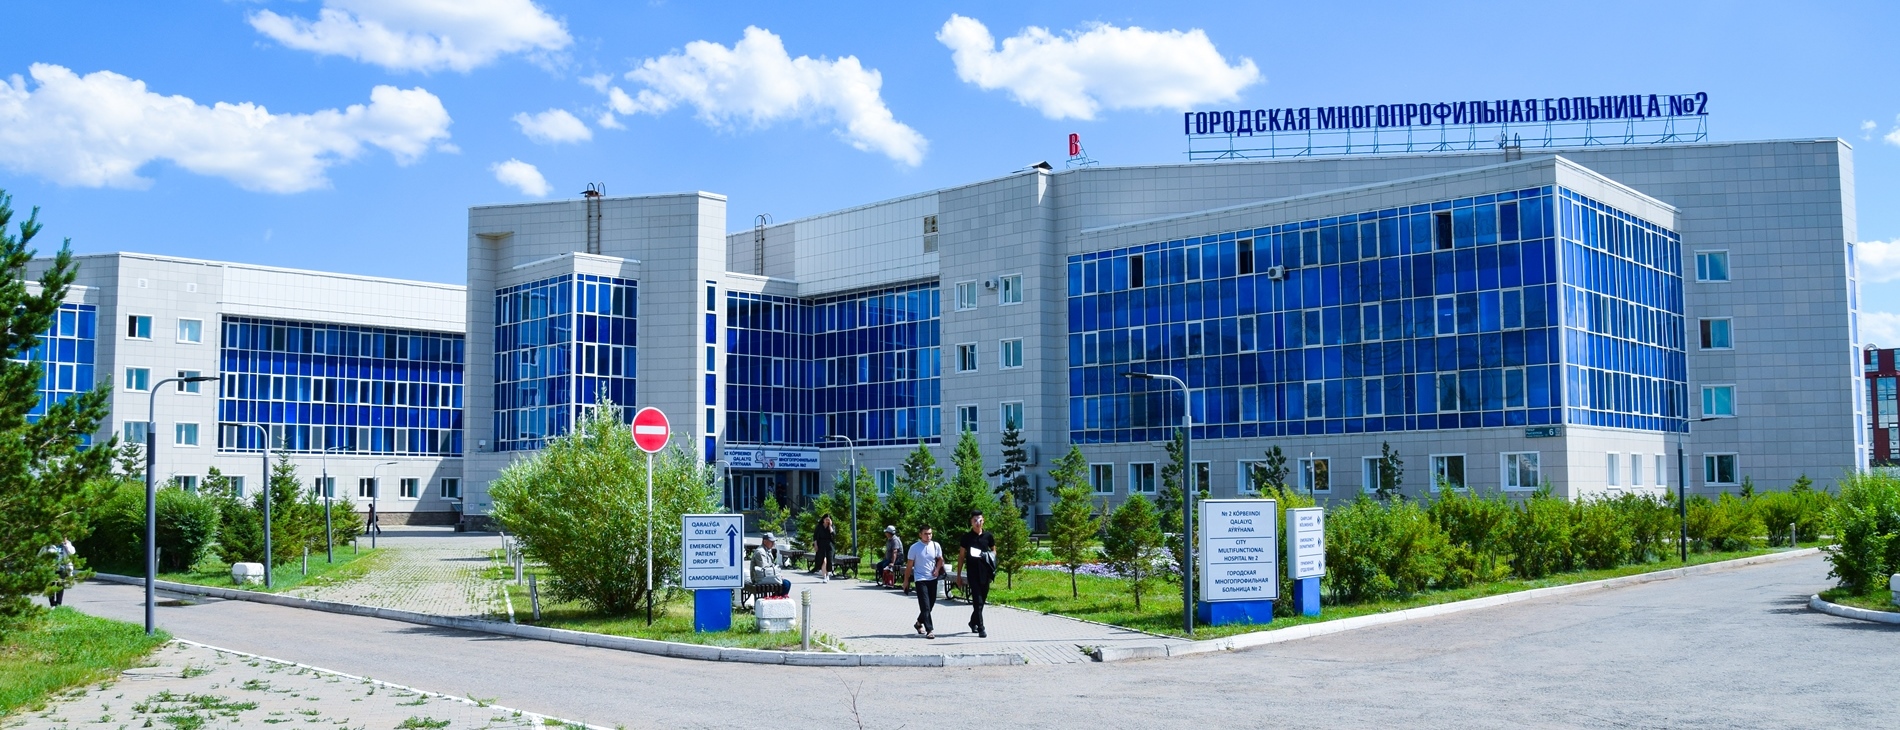 2 Городская больница Астана